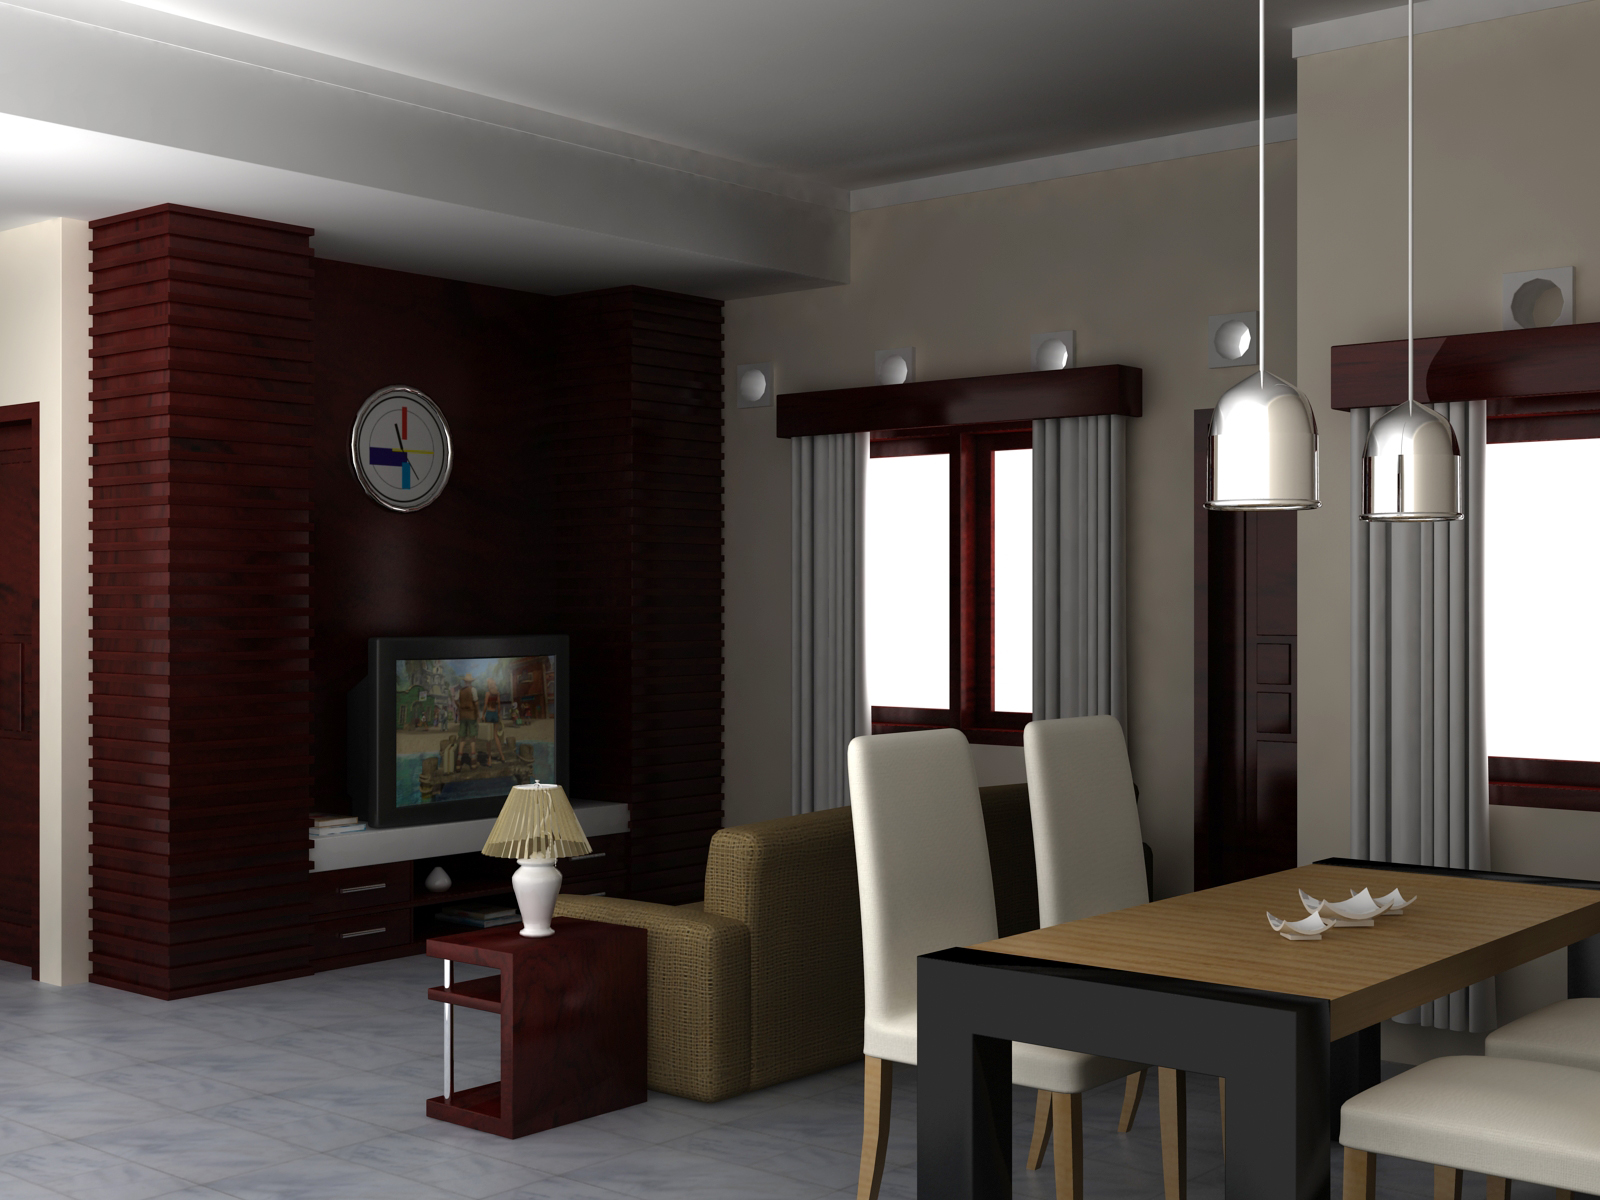 Design Interior Rumah: Interior Ruang Keluarga 5